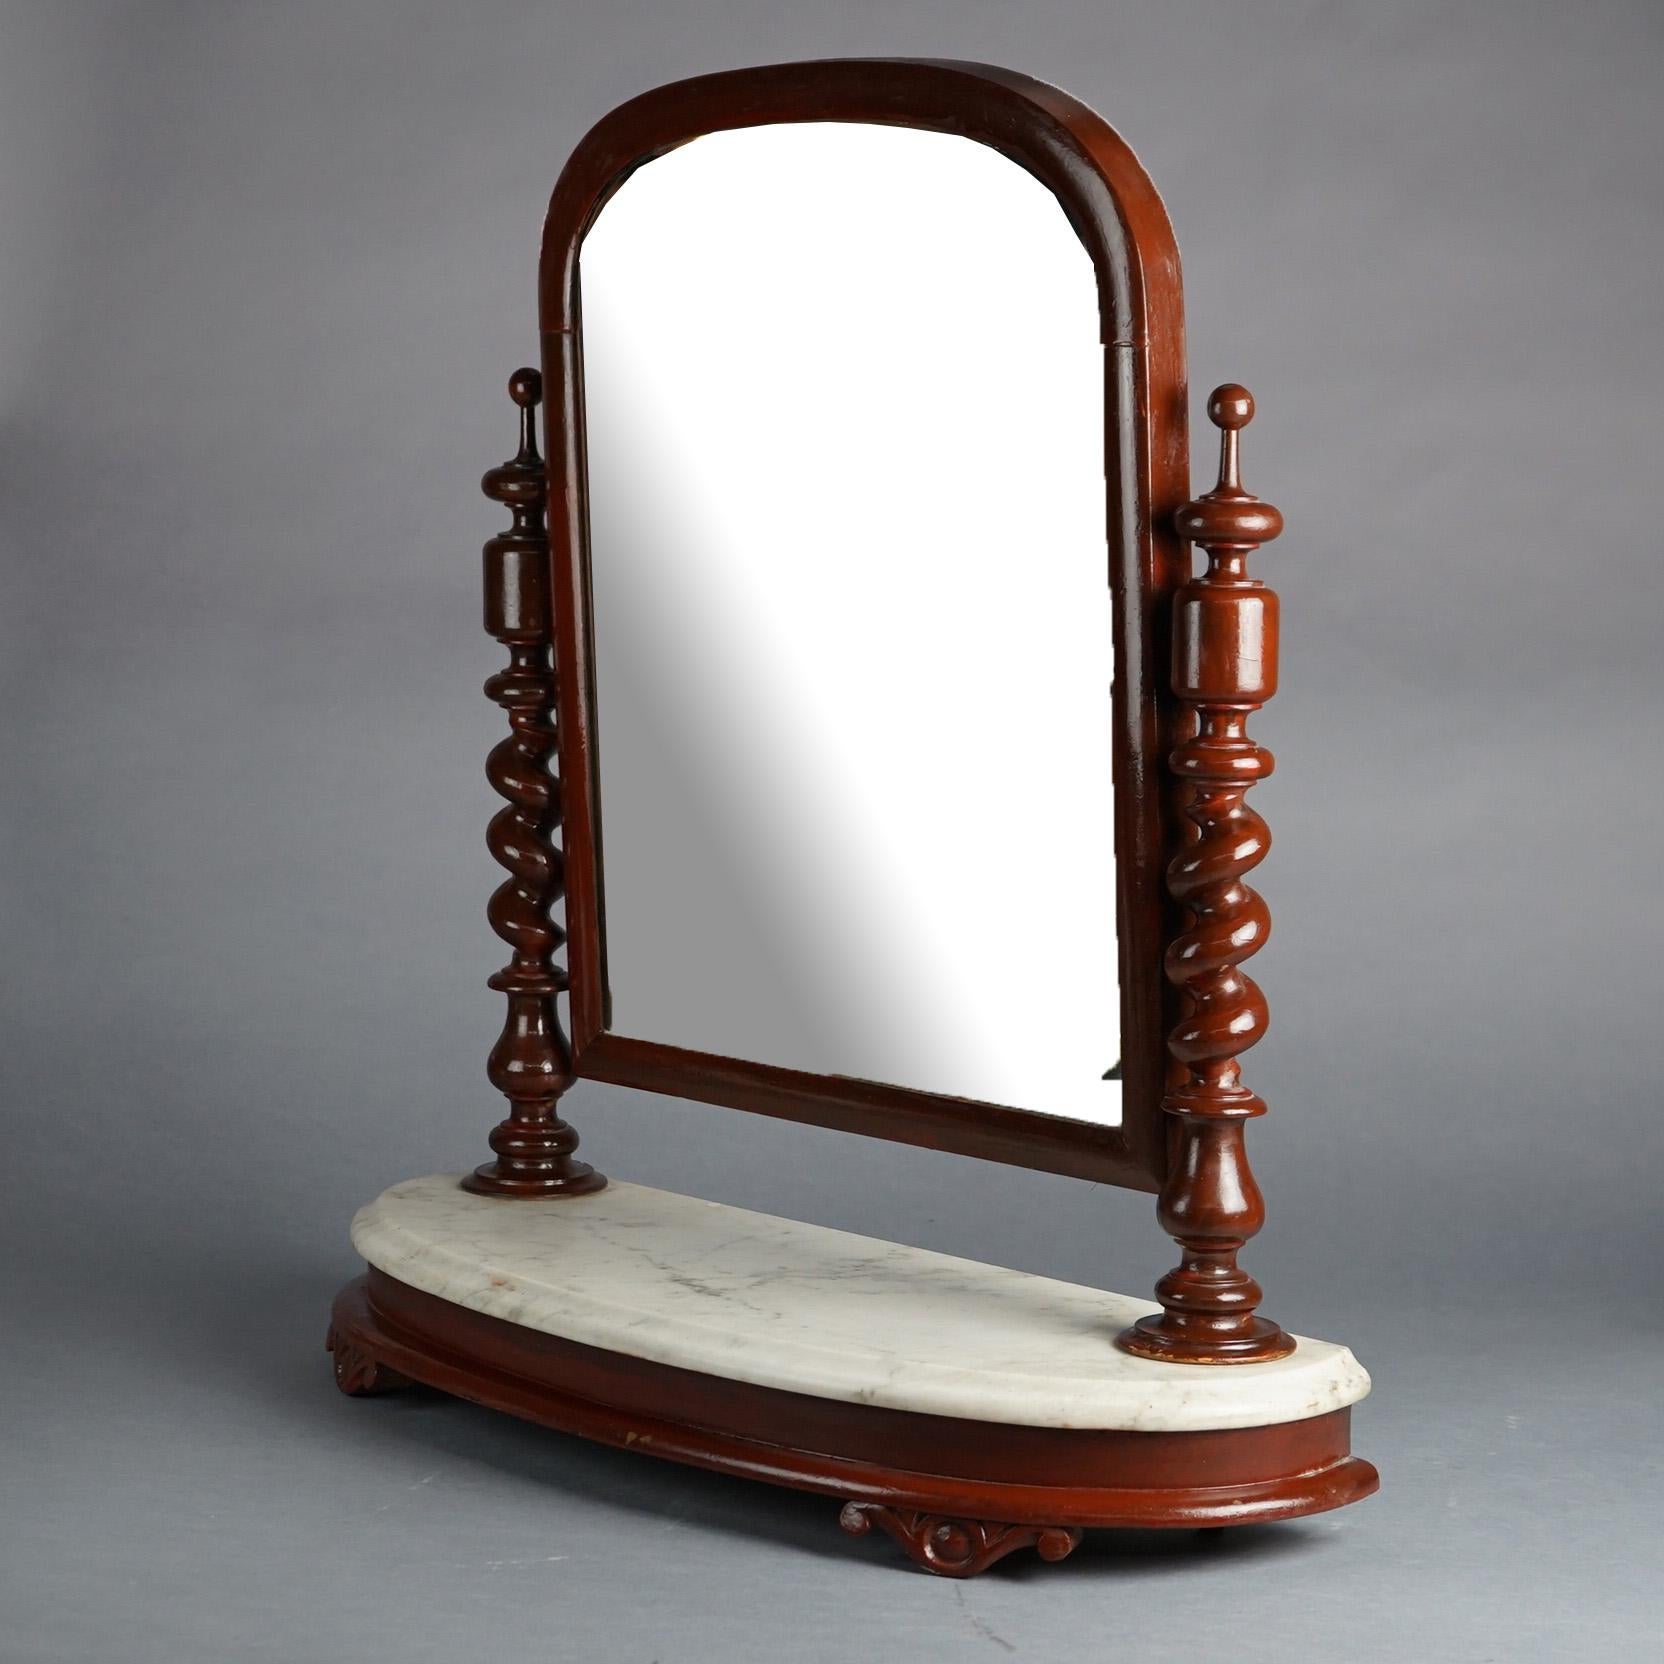 Ancien miroir de rasage anglais élisabéthain en acajou avec miroir arqué et supports en corde torsadée sur une base en marbre, 19e siècle

Dimensions : 27,75''H x 26,75''L x 9,25''P